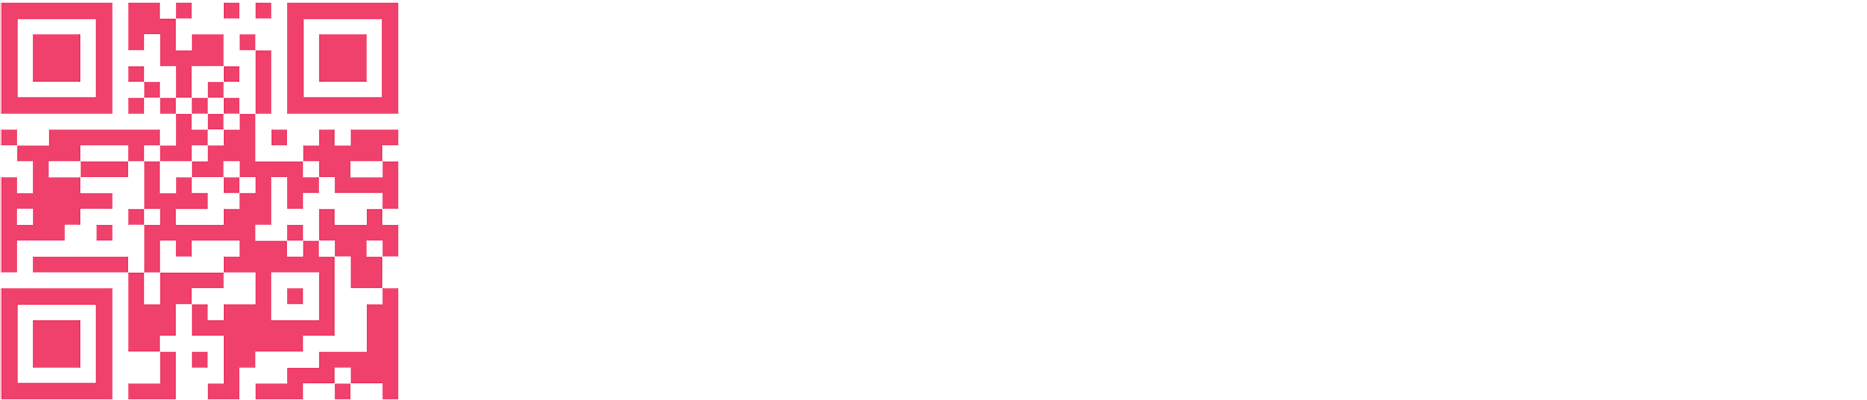 Tacta Logo